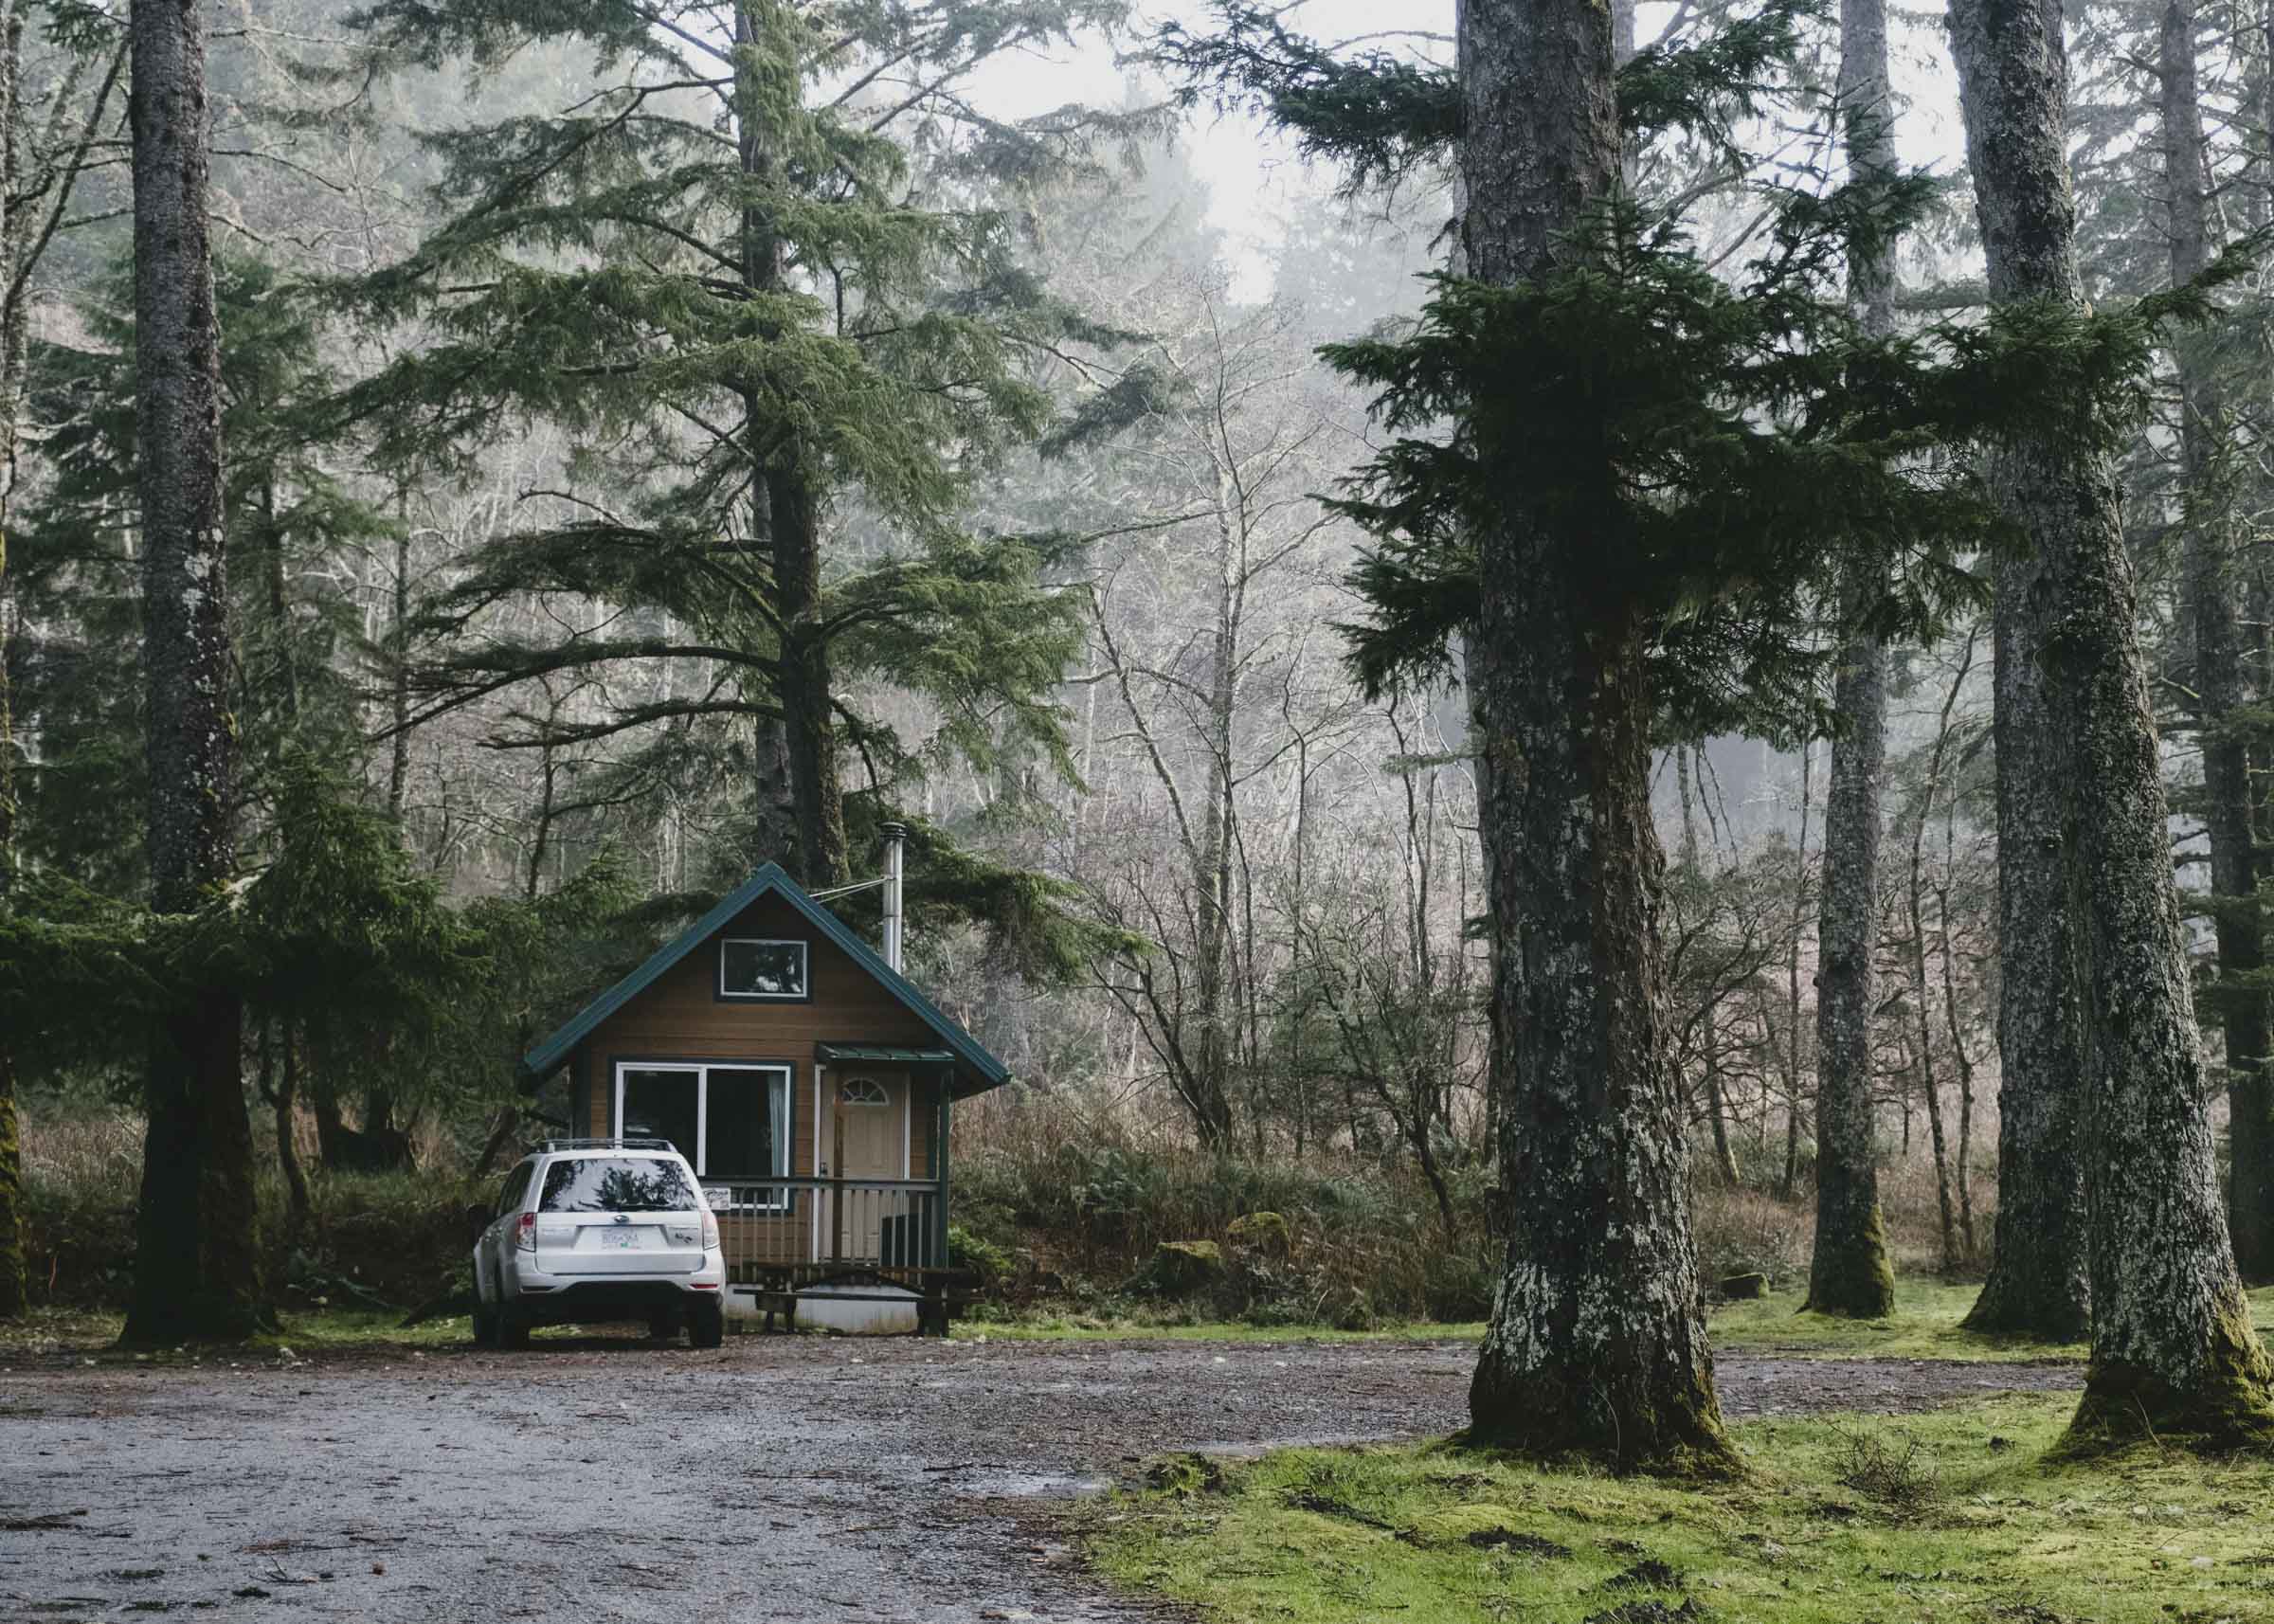 The cute little cabin at La Push, Washington